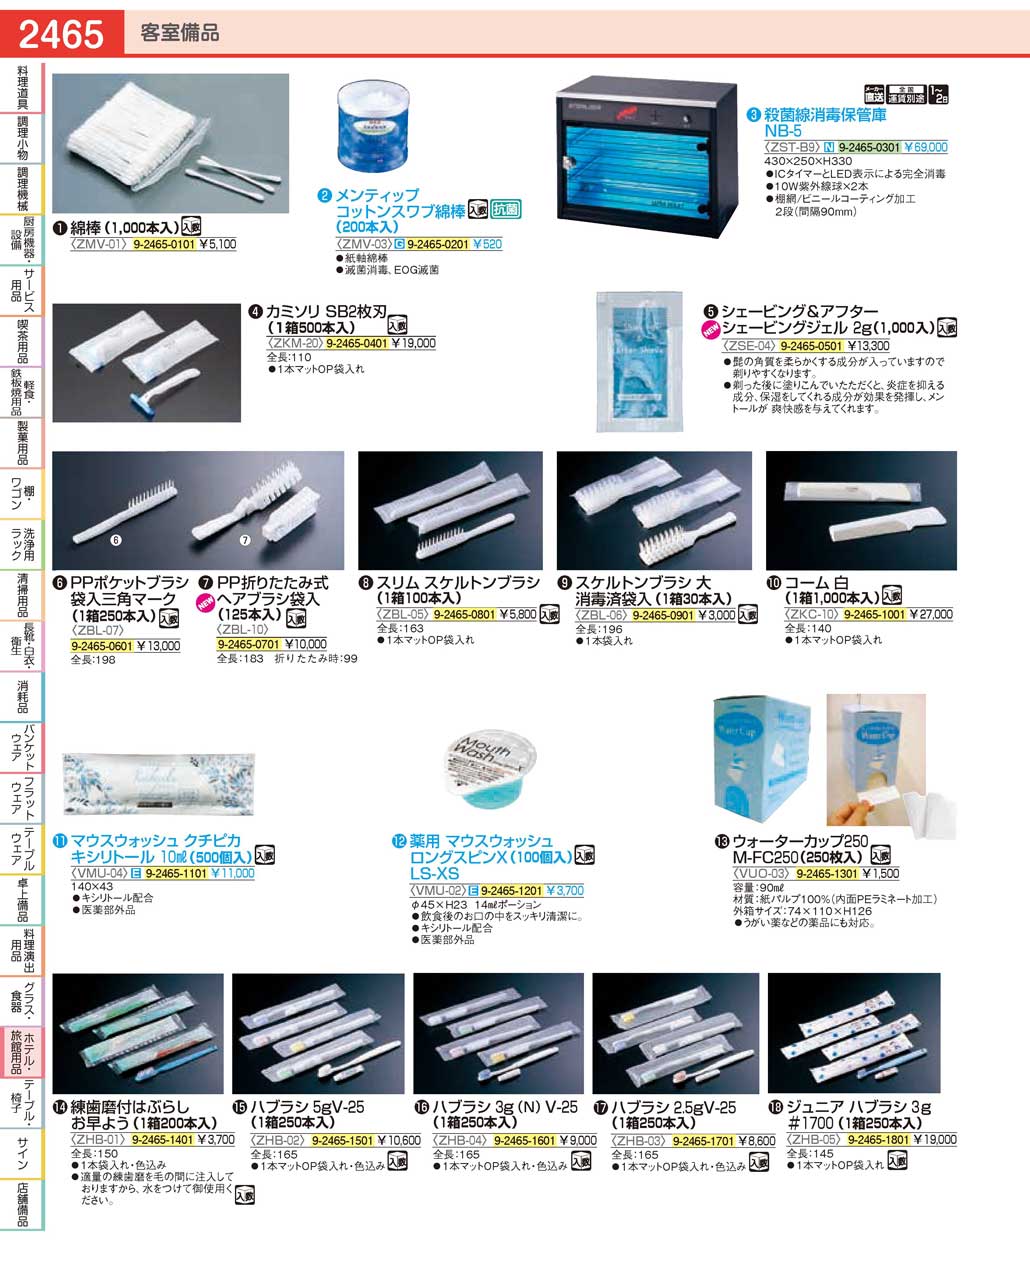 食器 客室備品・ヘアブラシ・歯ブラシRoom Supplies / Hairbrushes